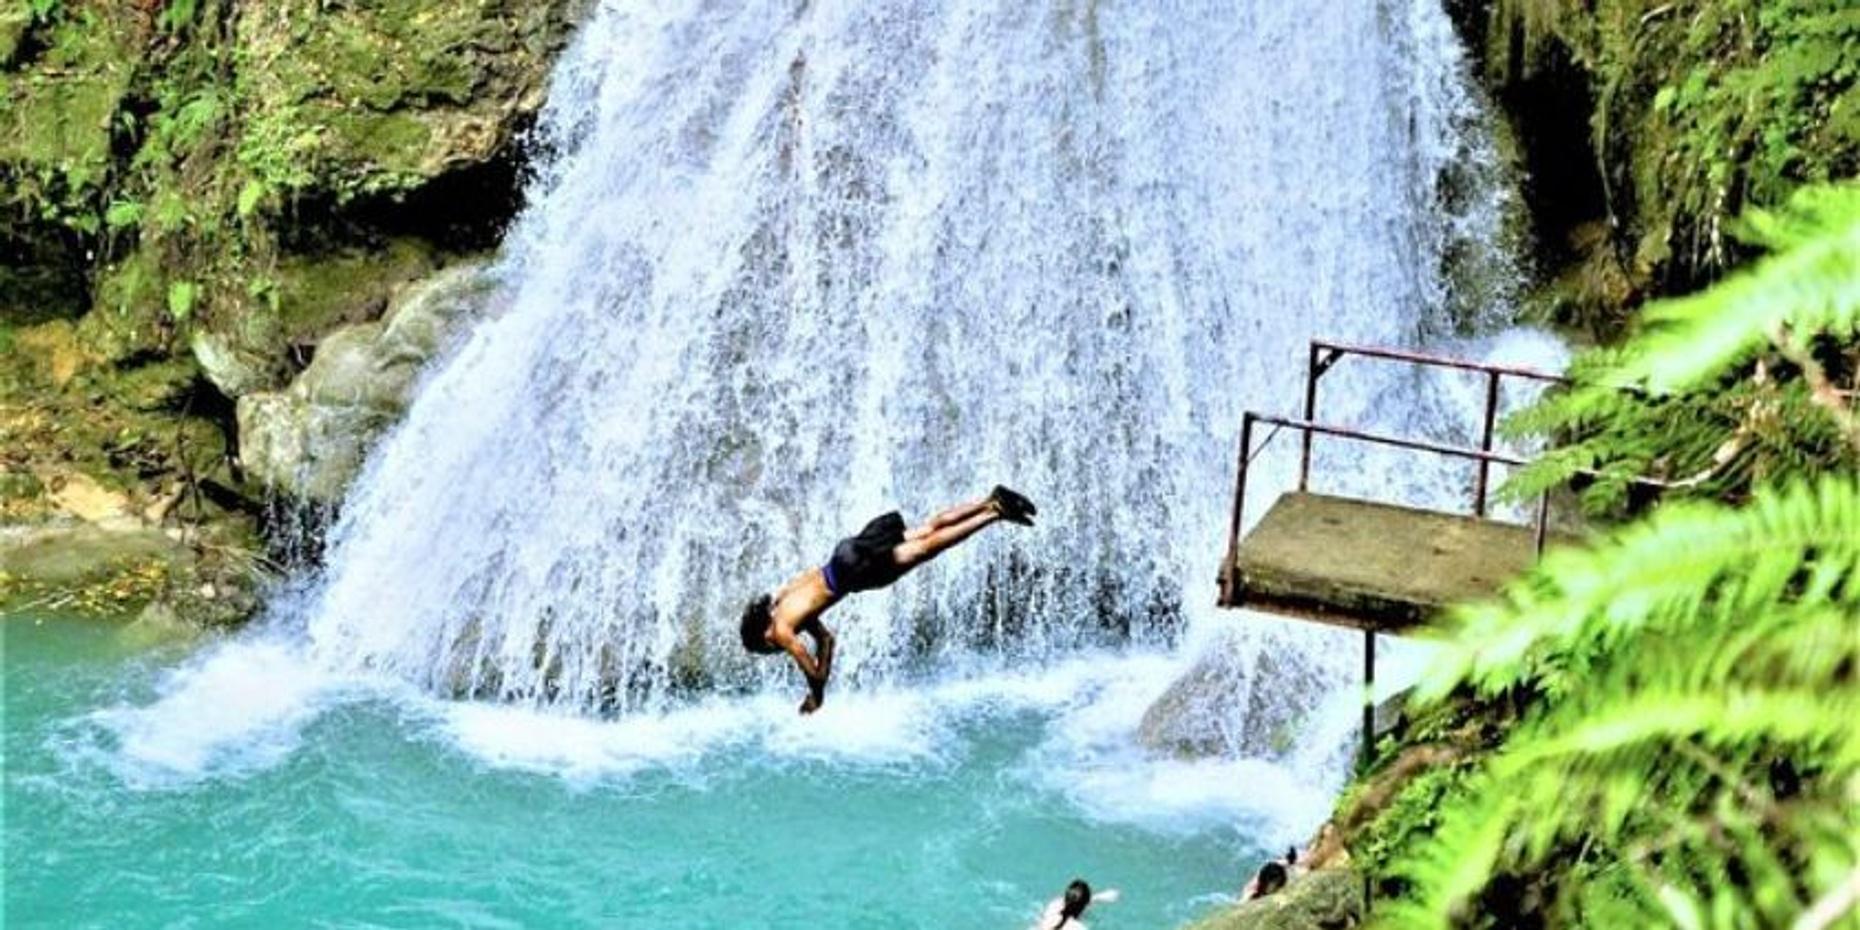 Blue Hole Secret Falls, ATV & Luminous Lagoon in Jamaica